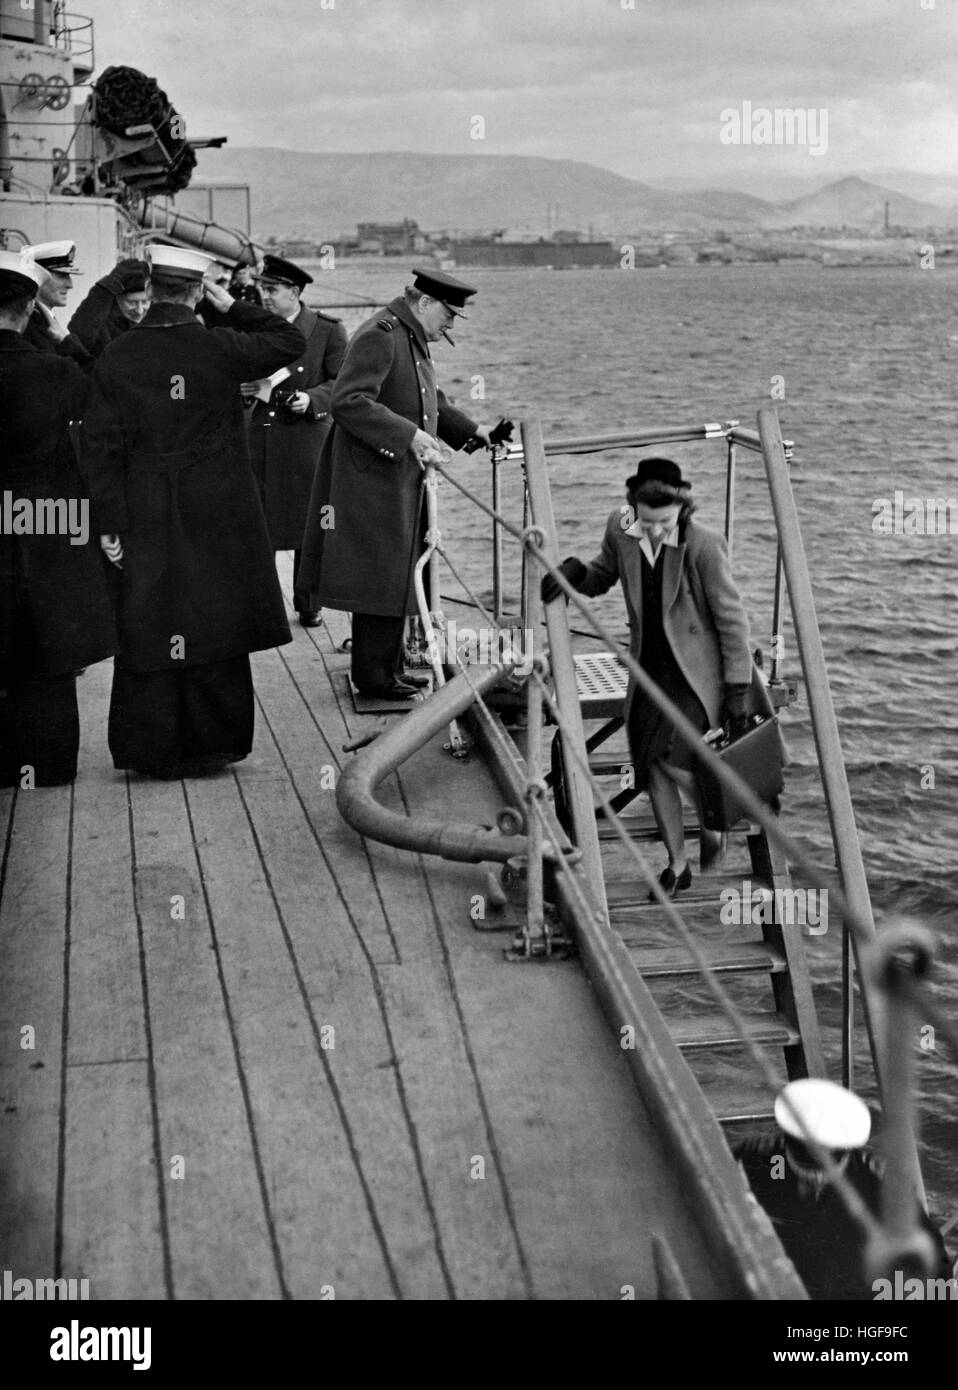 Winston Churchill startet HMS Ajax in Athen, Griechenland, um an einer Konferenz mit der griechischen Regierung teilzunehmen. Dezember 1944 Stockfoto